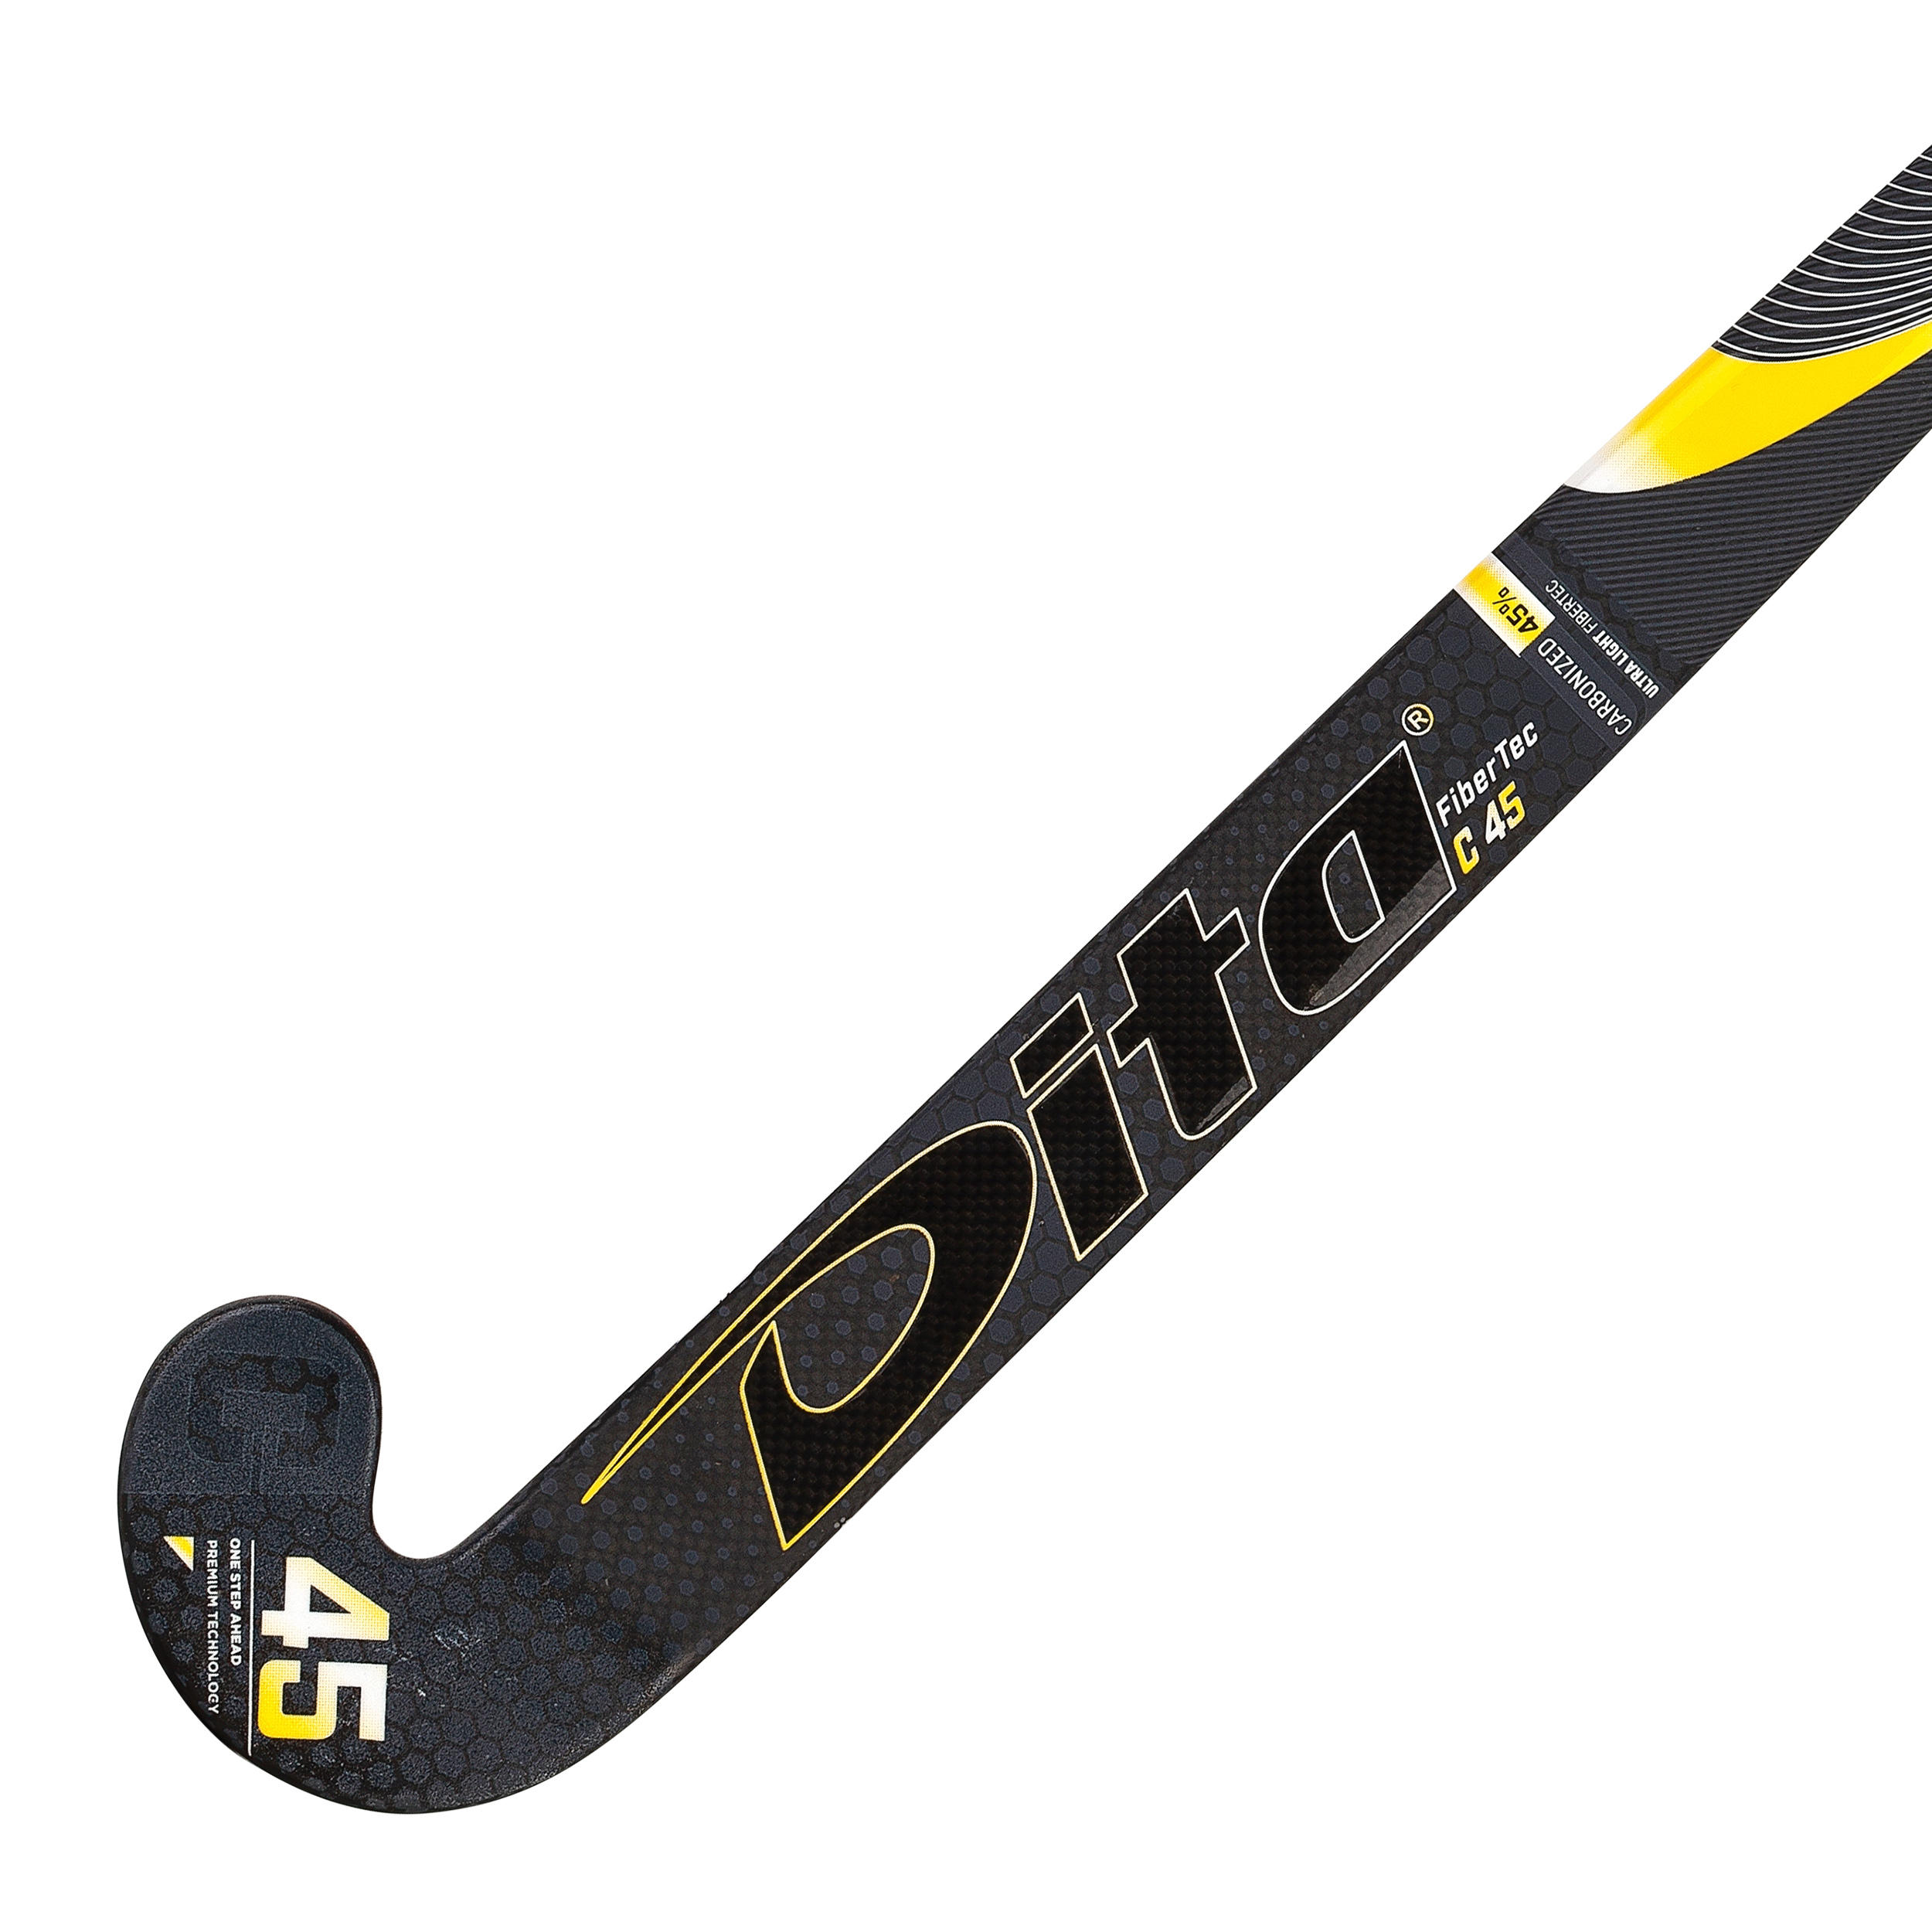 Adult Intermediate 45% Carbon Low Bow Field Hockey Stick FiberTec - Black/Gold 4/12